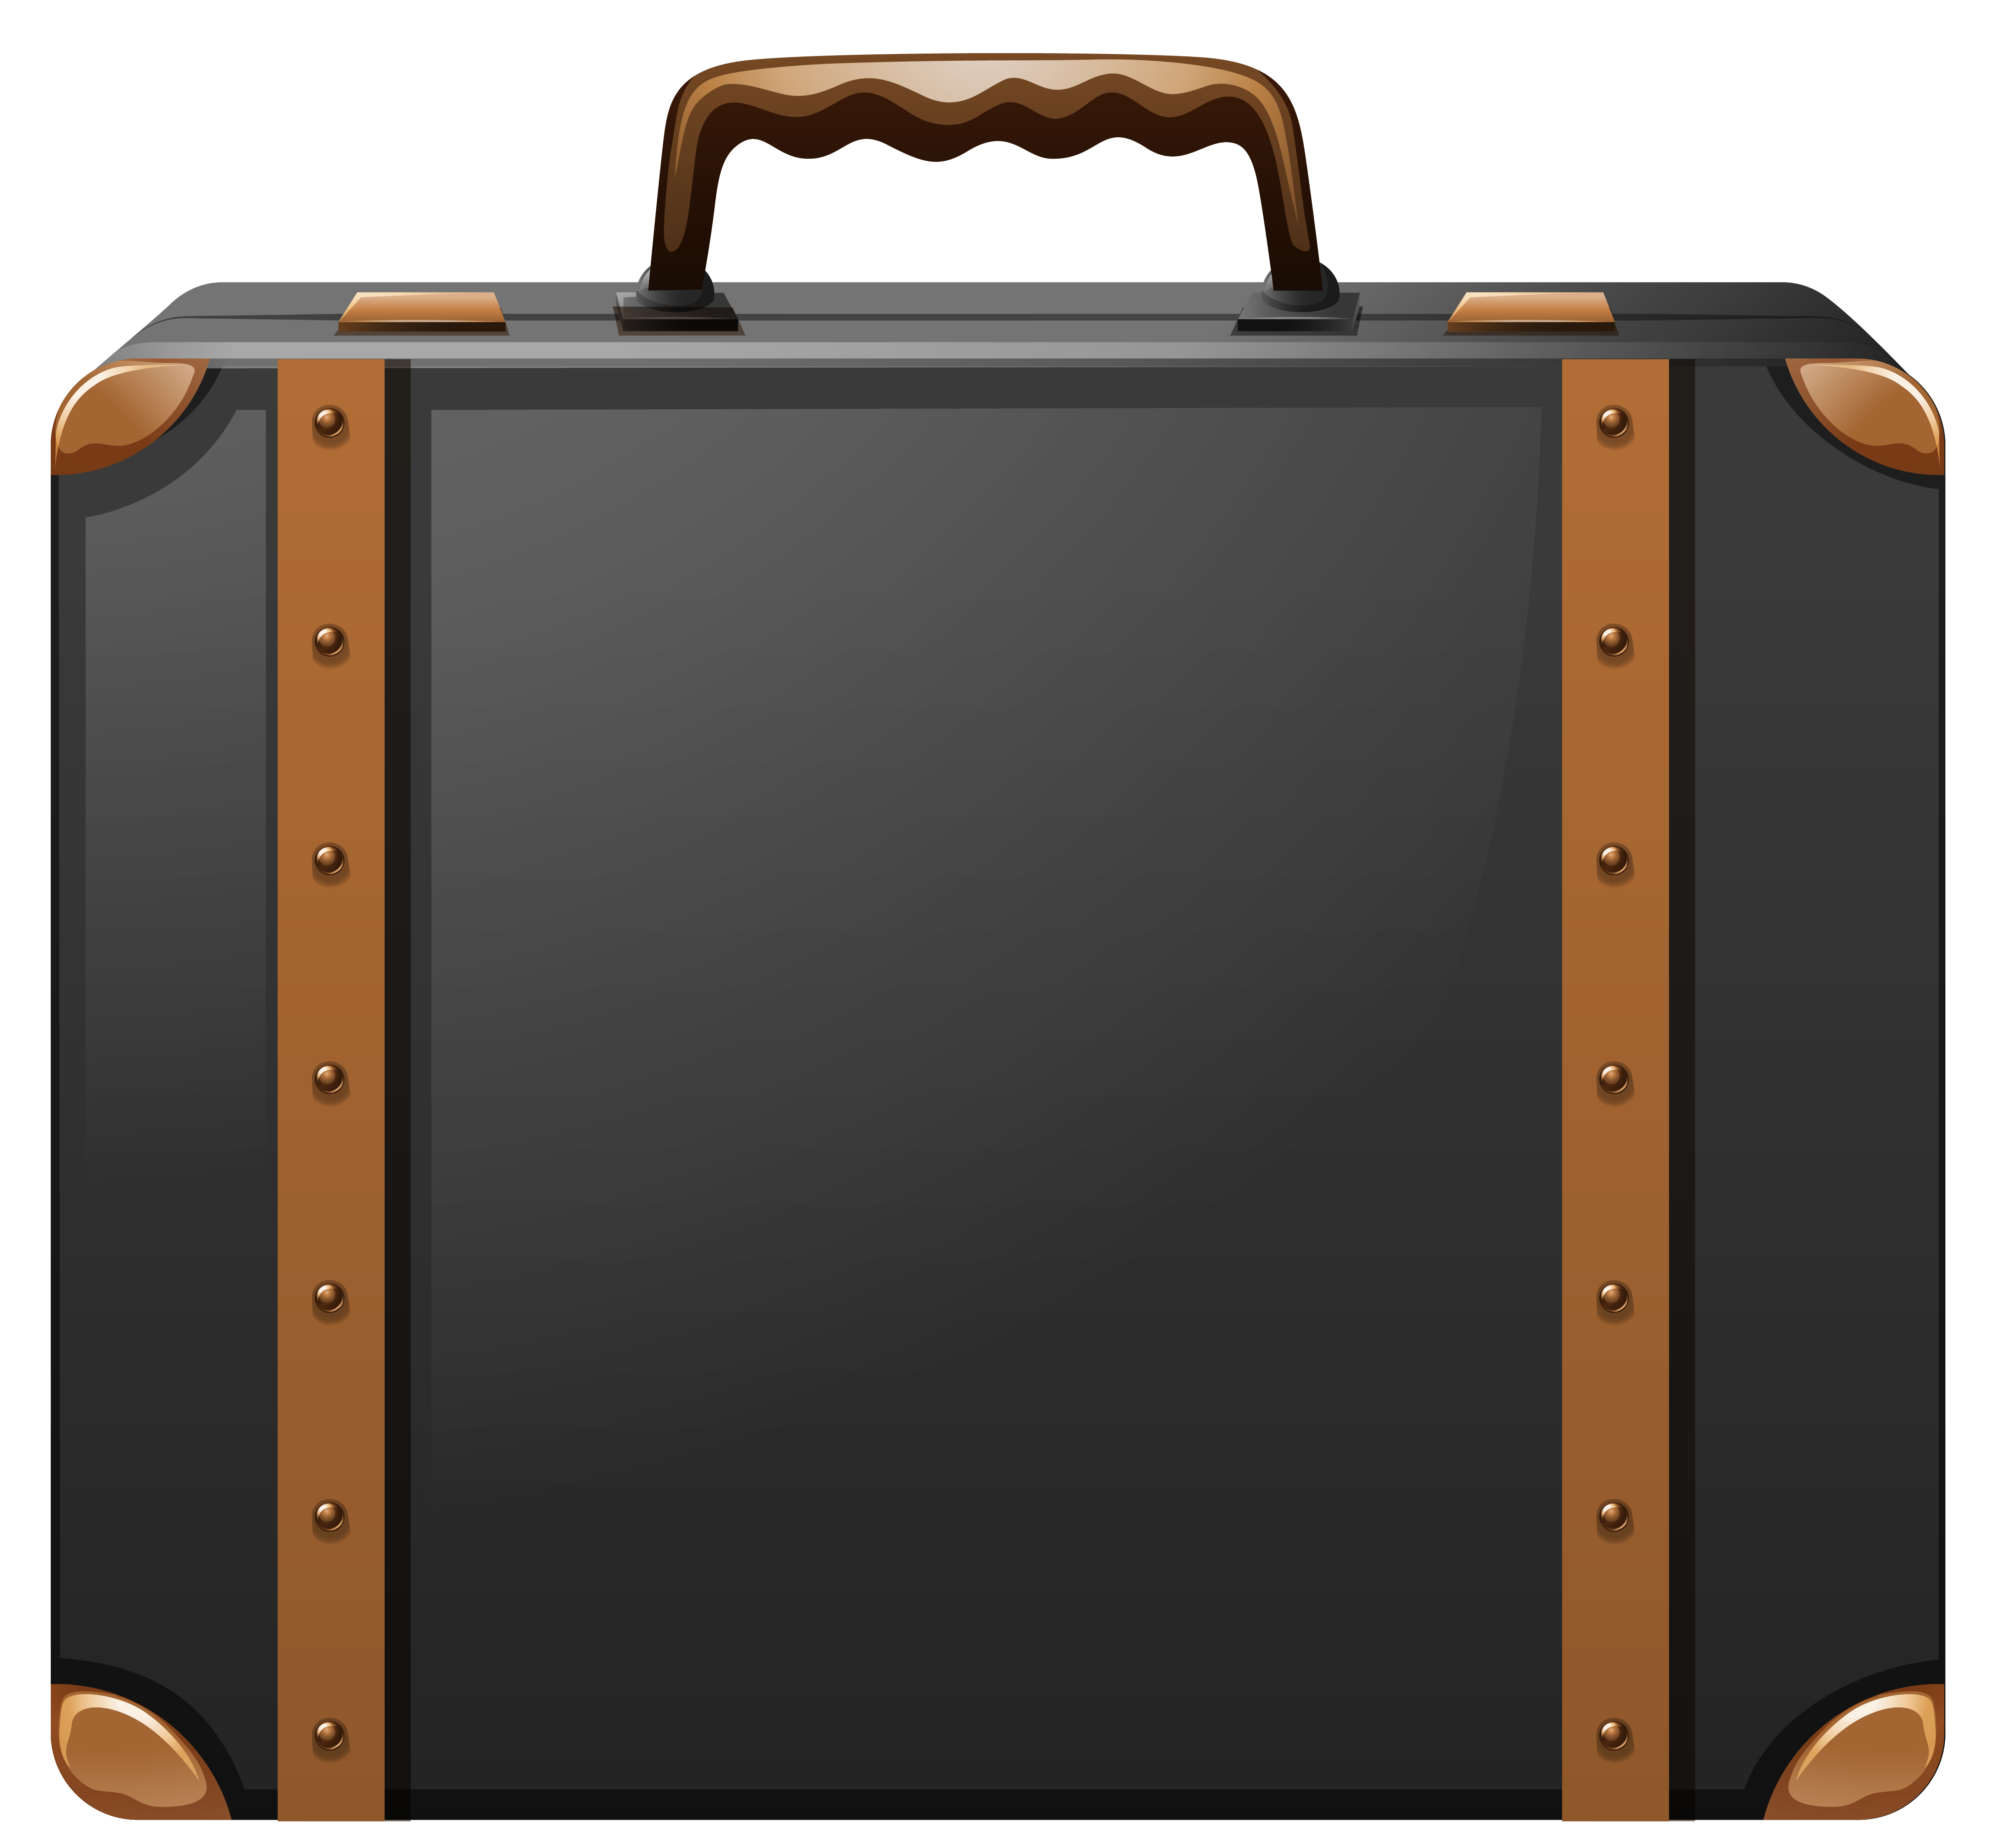 Suitcase PNG-PlusPNG.com-691